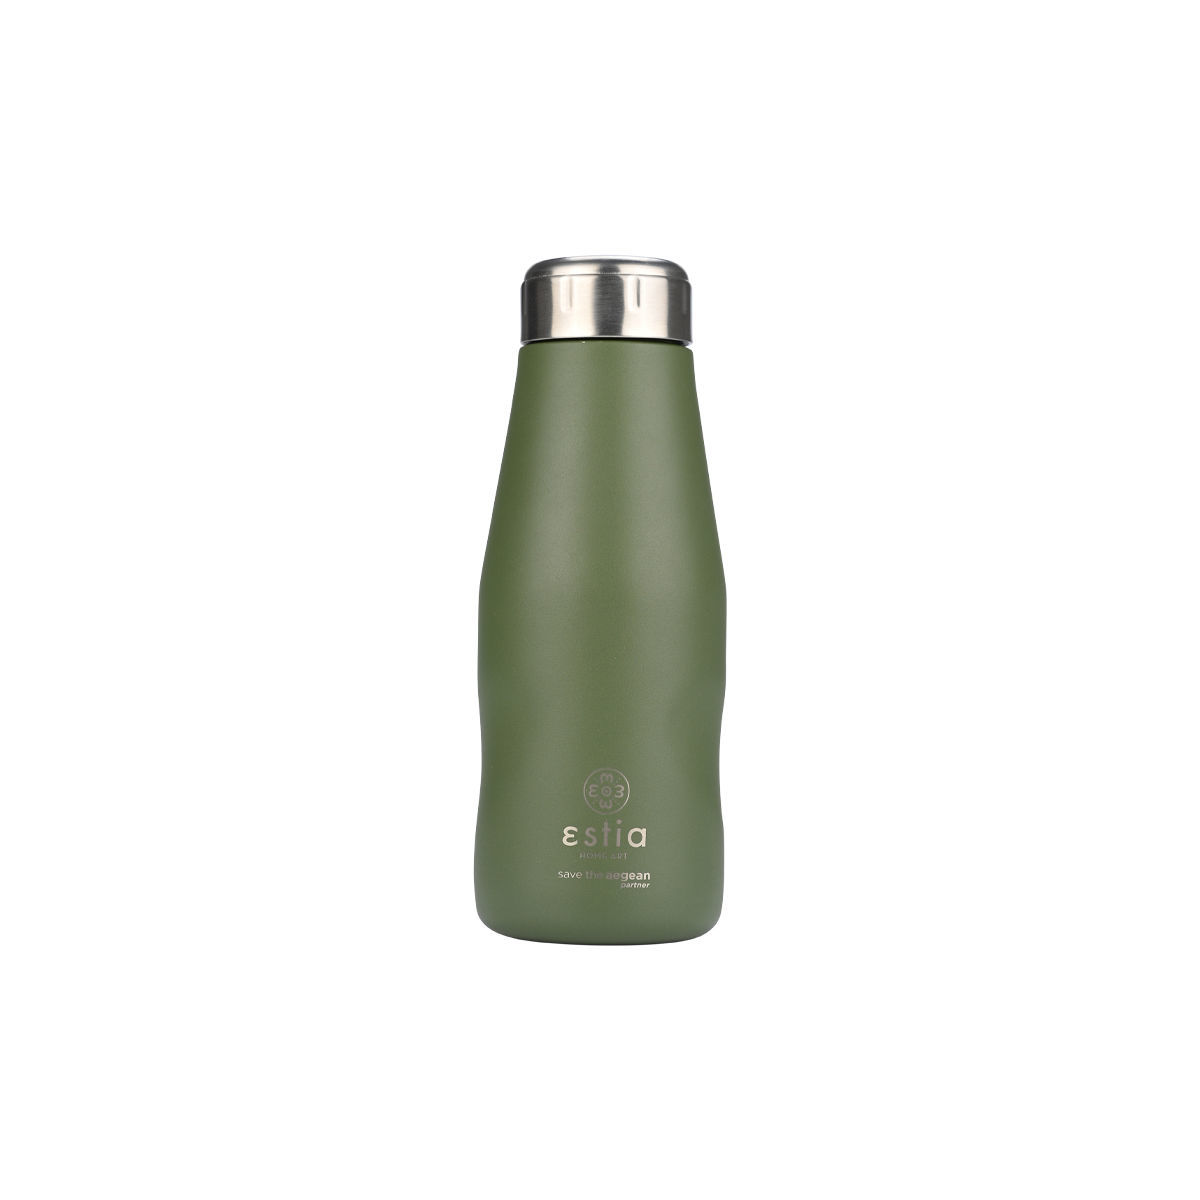 Θερμός-Μπουκάλι Ανοξείδωτο Forest Spirit Flask Save The Aegean Estia 350ml-6,5×6,5×18,5εκ. 01-22303 (Υλικό: Ανοξείδωτο, Χρώμα: Πράσινο ) – estia – 01-22303